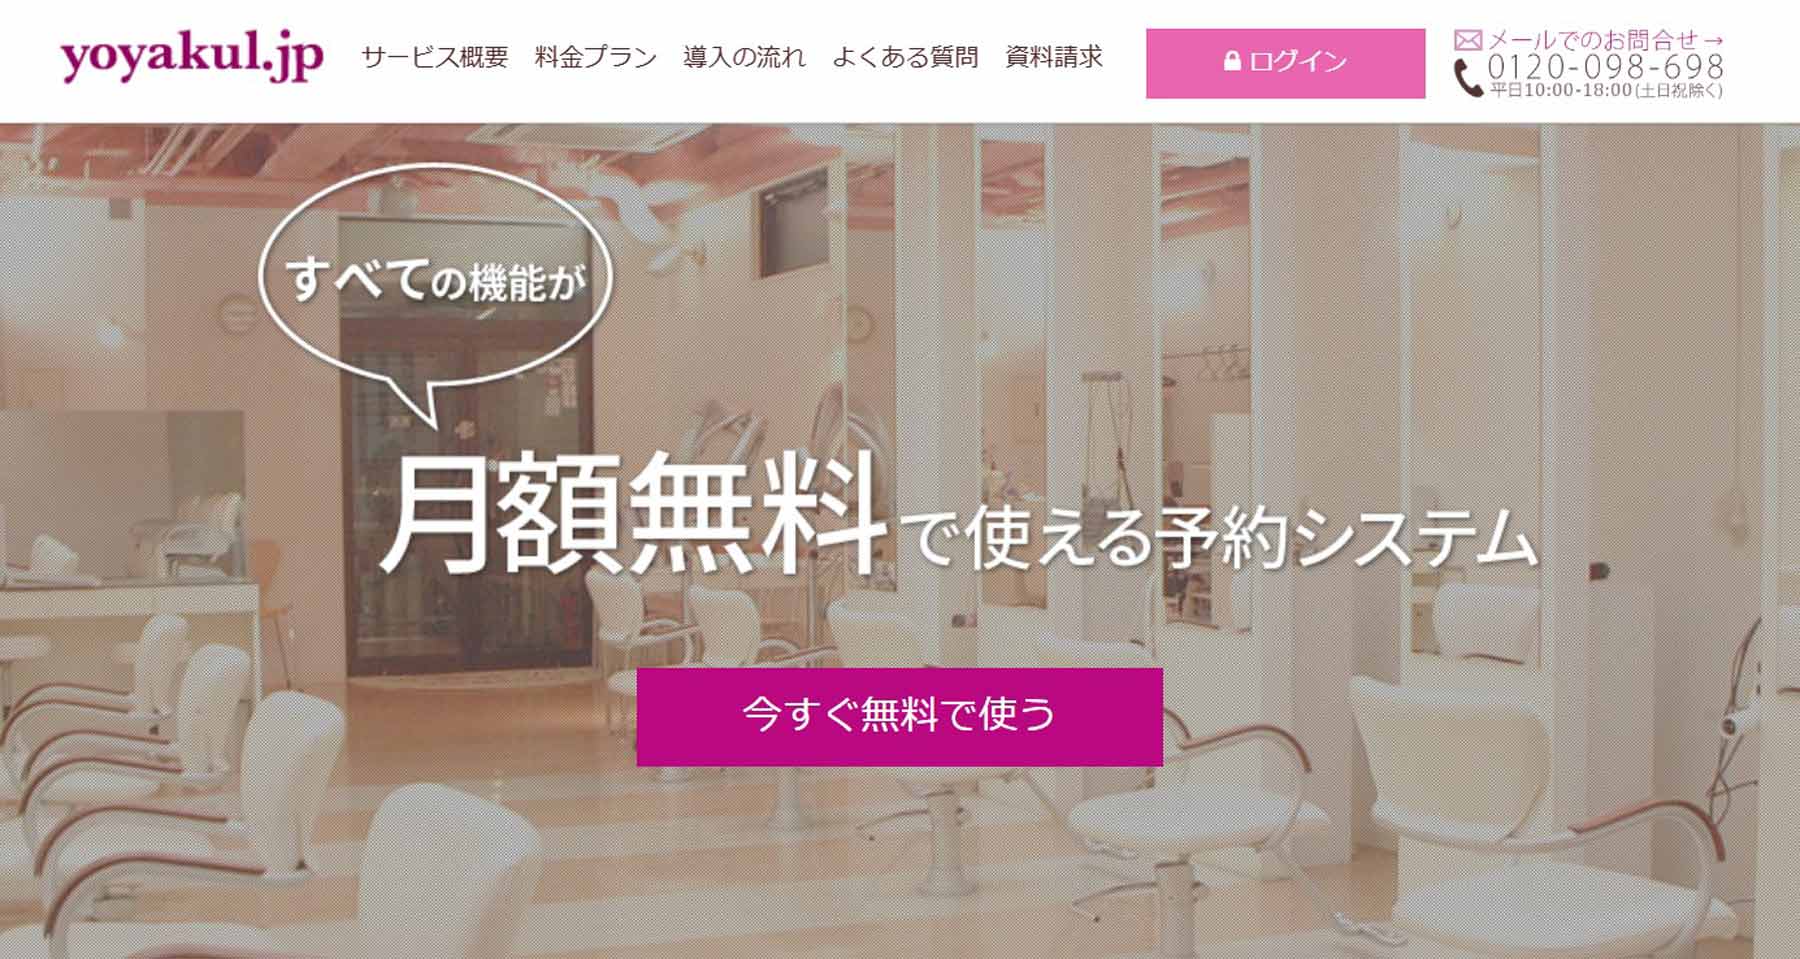 yoyakul.jp公式Webサイト